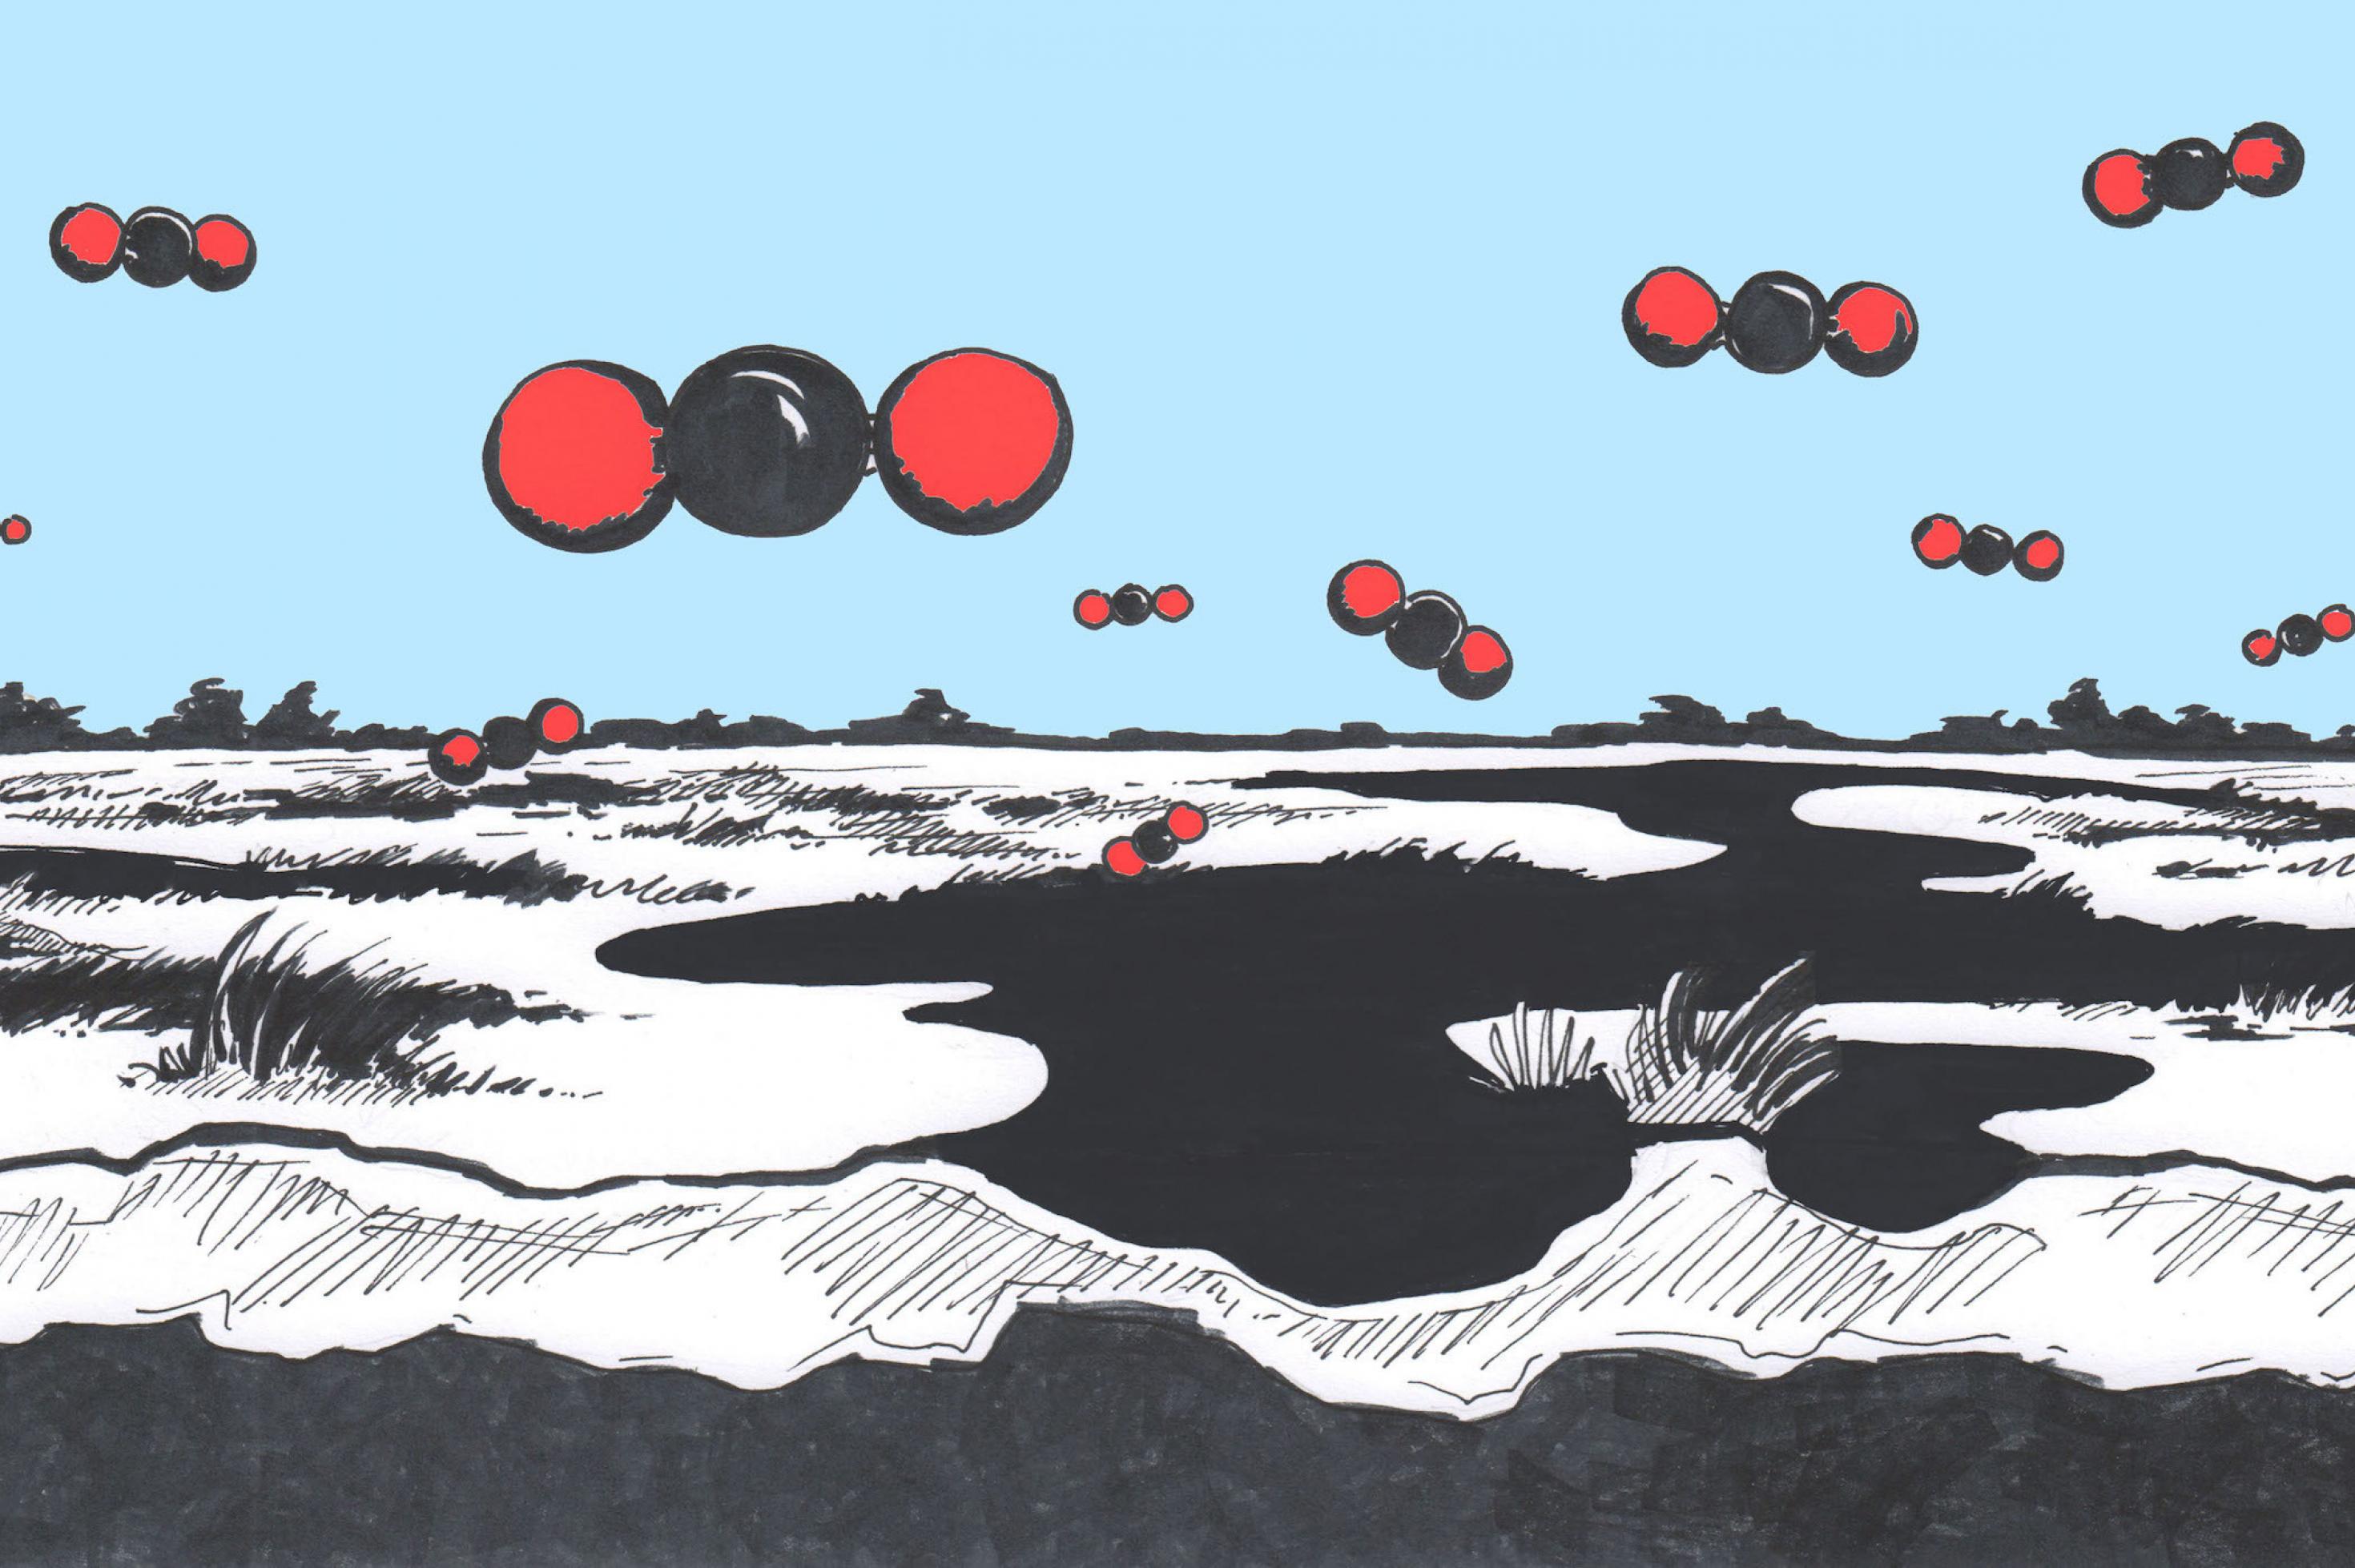 Die Illustration zeigt eine Moorlandschaft in schwarz, darüber schweben wie Raumschiffe Kohlendioxid-Moleküle, die übergroß im Kugelmodell von Atomen gezeichnet sind.